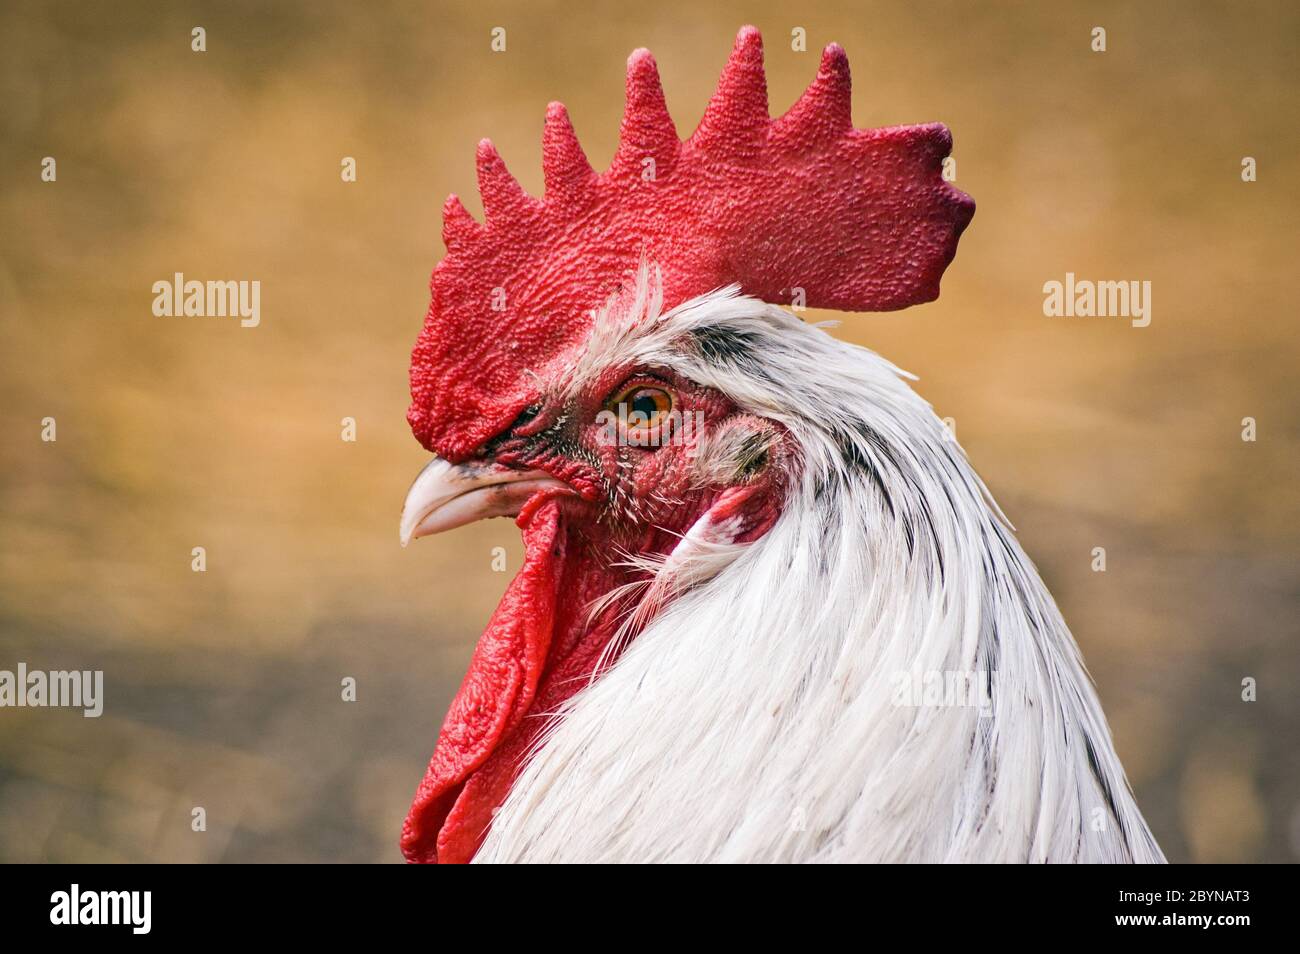 Alert face of a cockerel, rooster, in a farmyard. Stock Photo